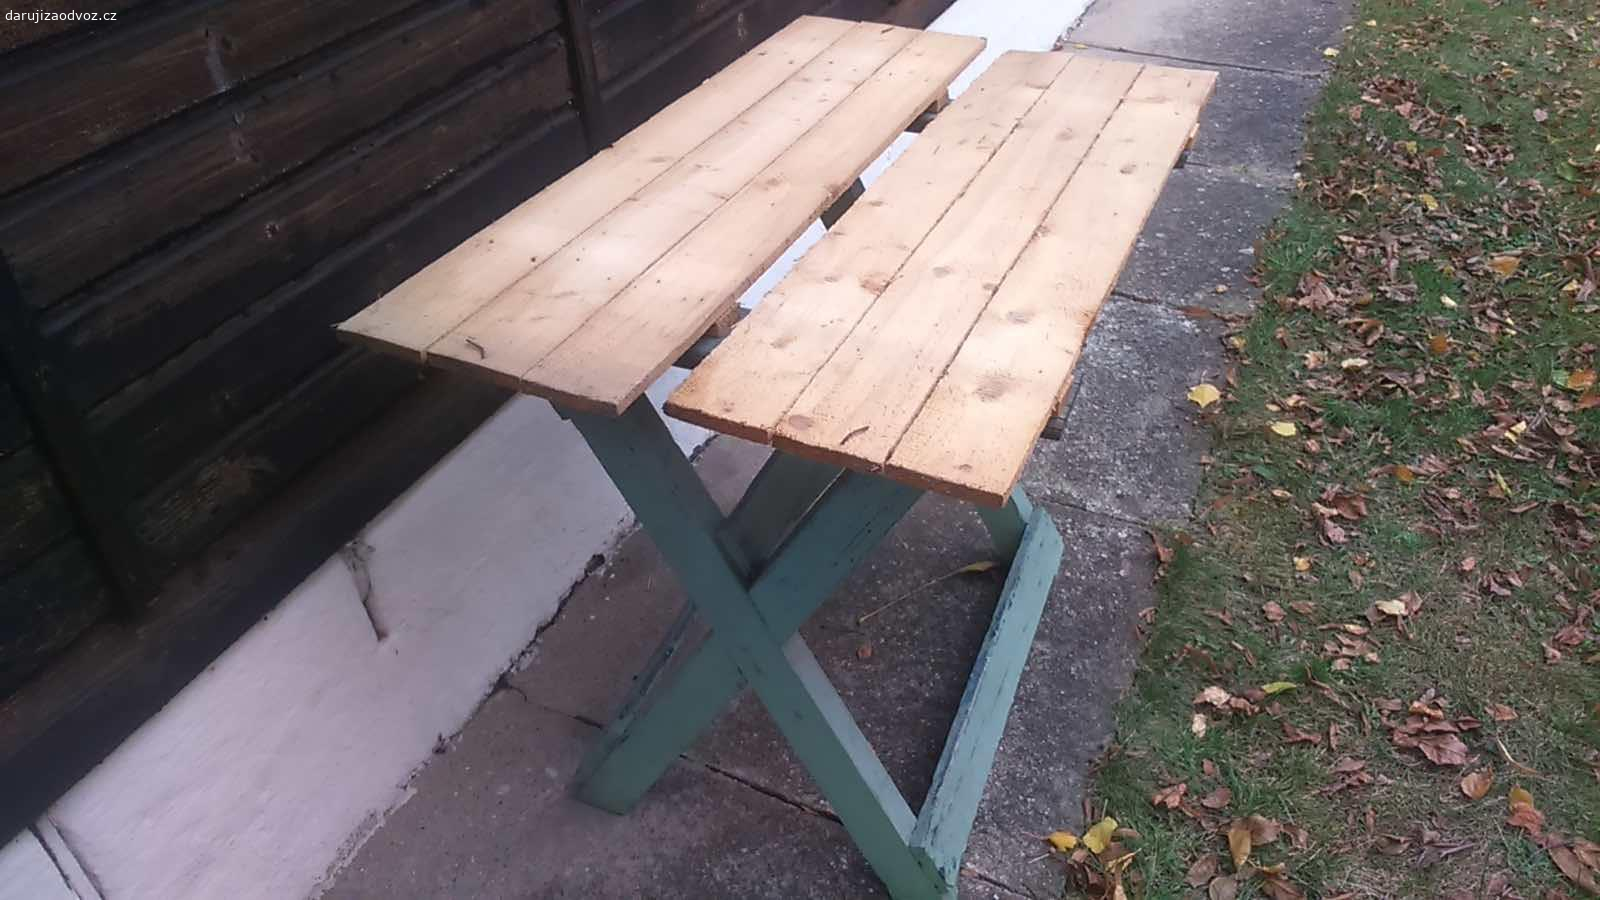 Zahradní nábytek dřevo. Stul, deska, stolek, 2 zidle.
Vymena za malé domaci produkty.